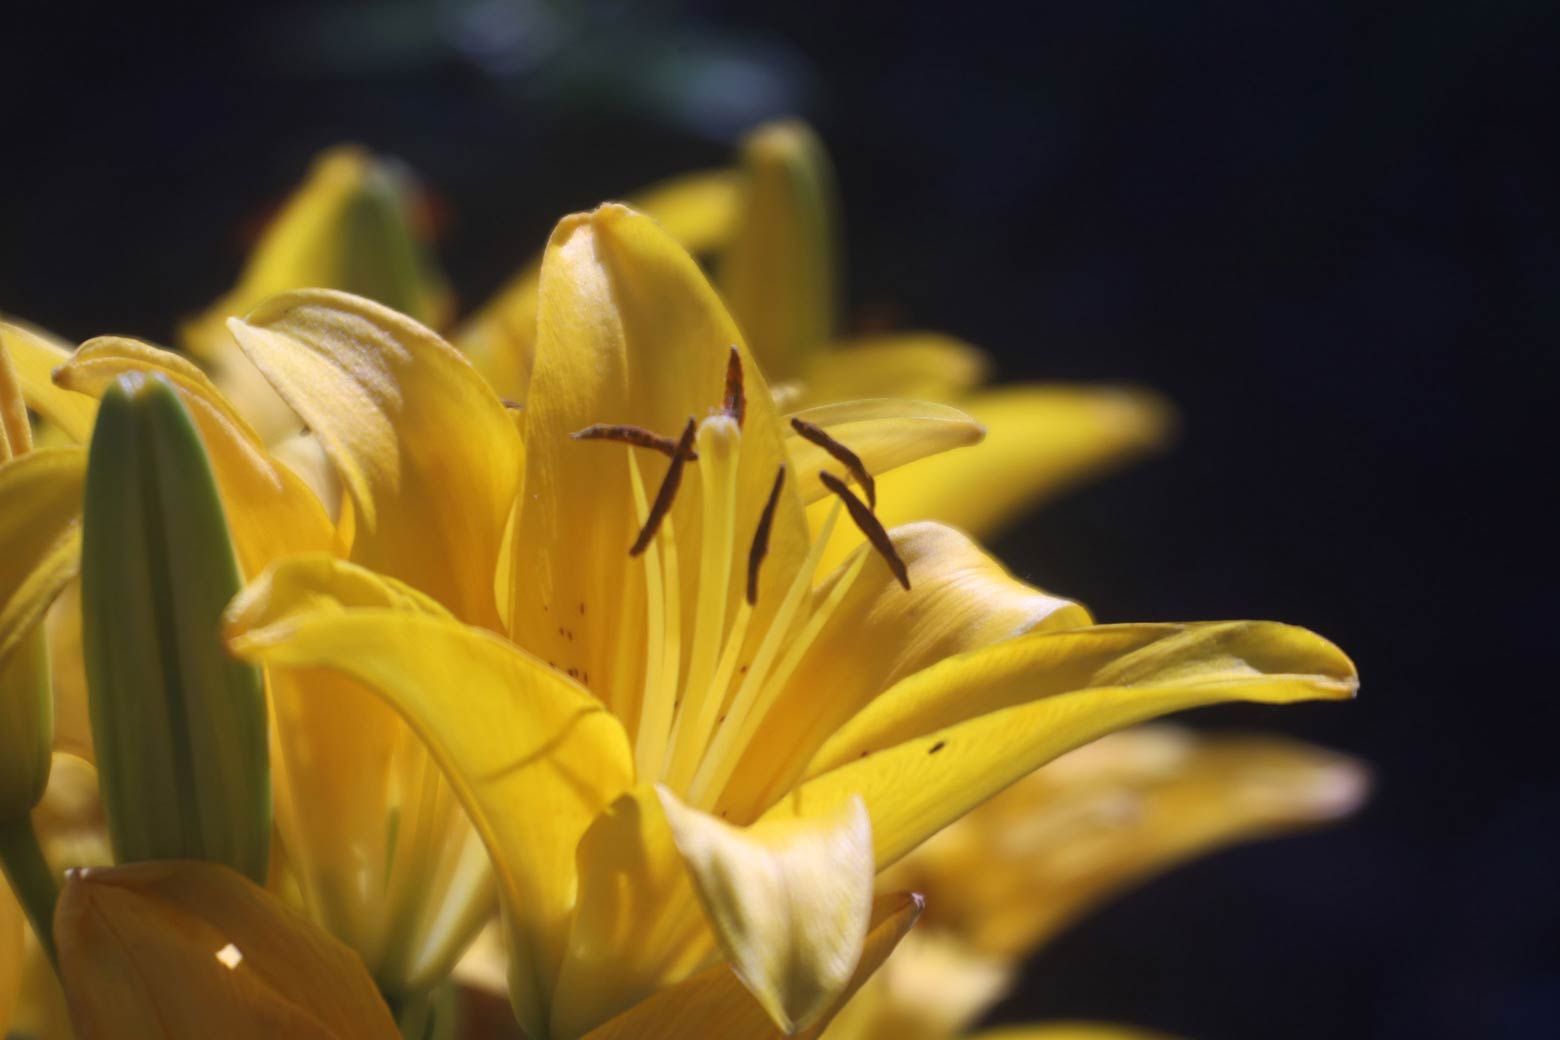 Stylized macro image of a yellow lily